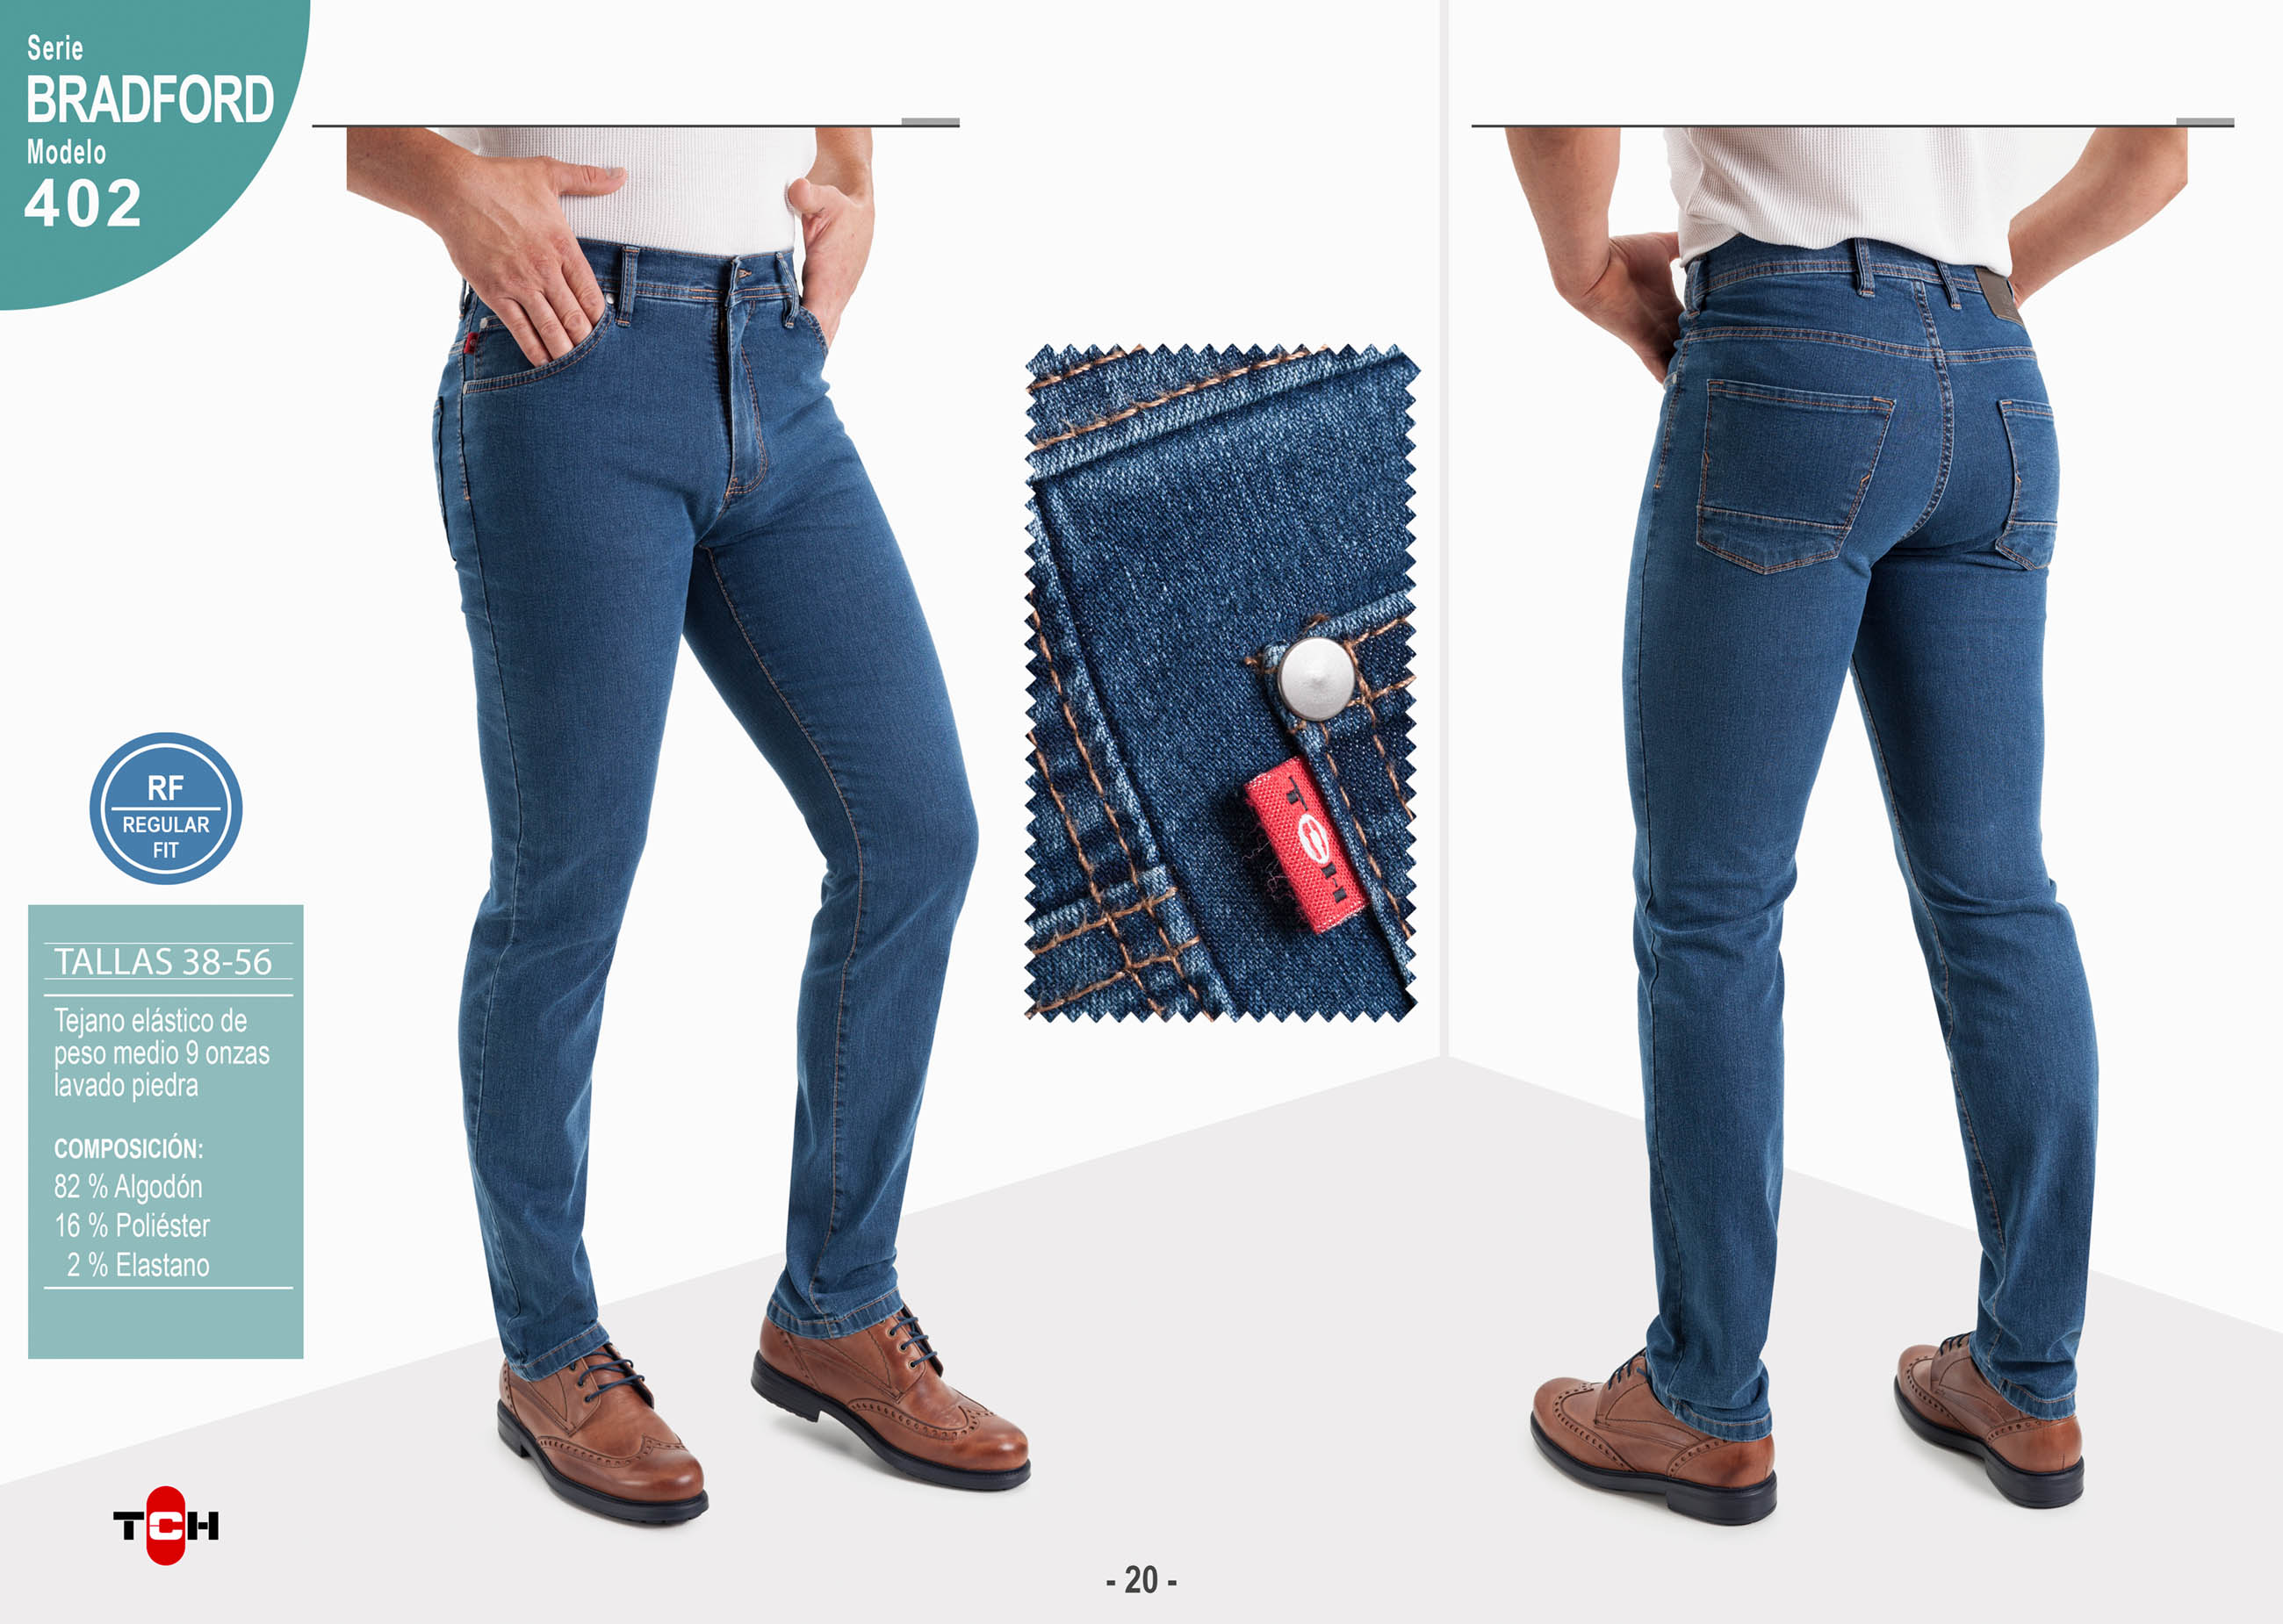 Jeans para hombre, pantalón vaquero en tejido denim azul piedra de algodón con lycra e hilo a contraste en línea Regular Fit.